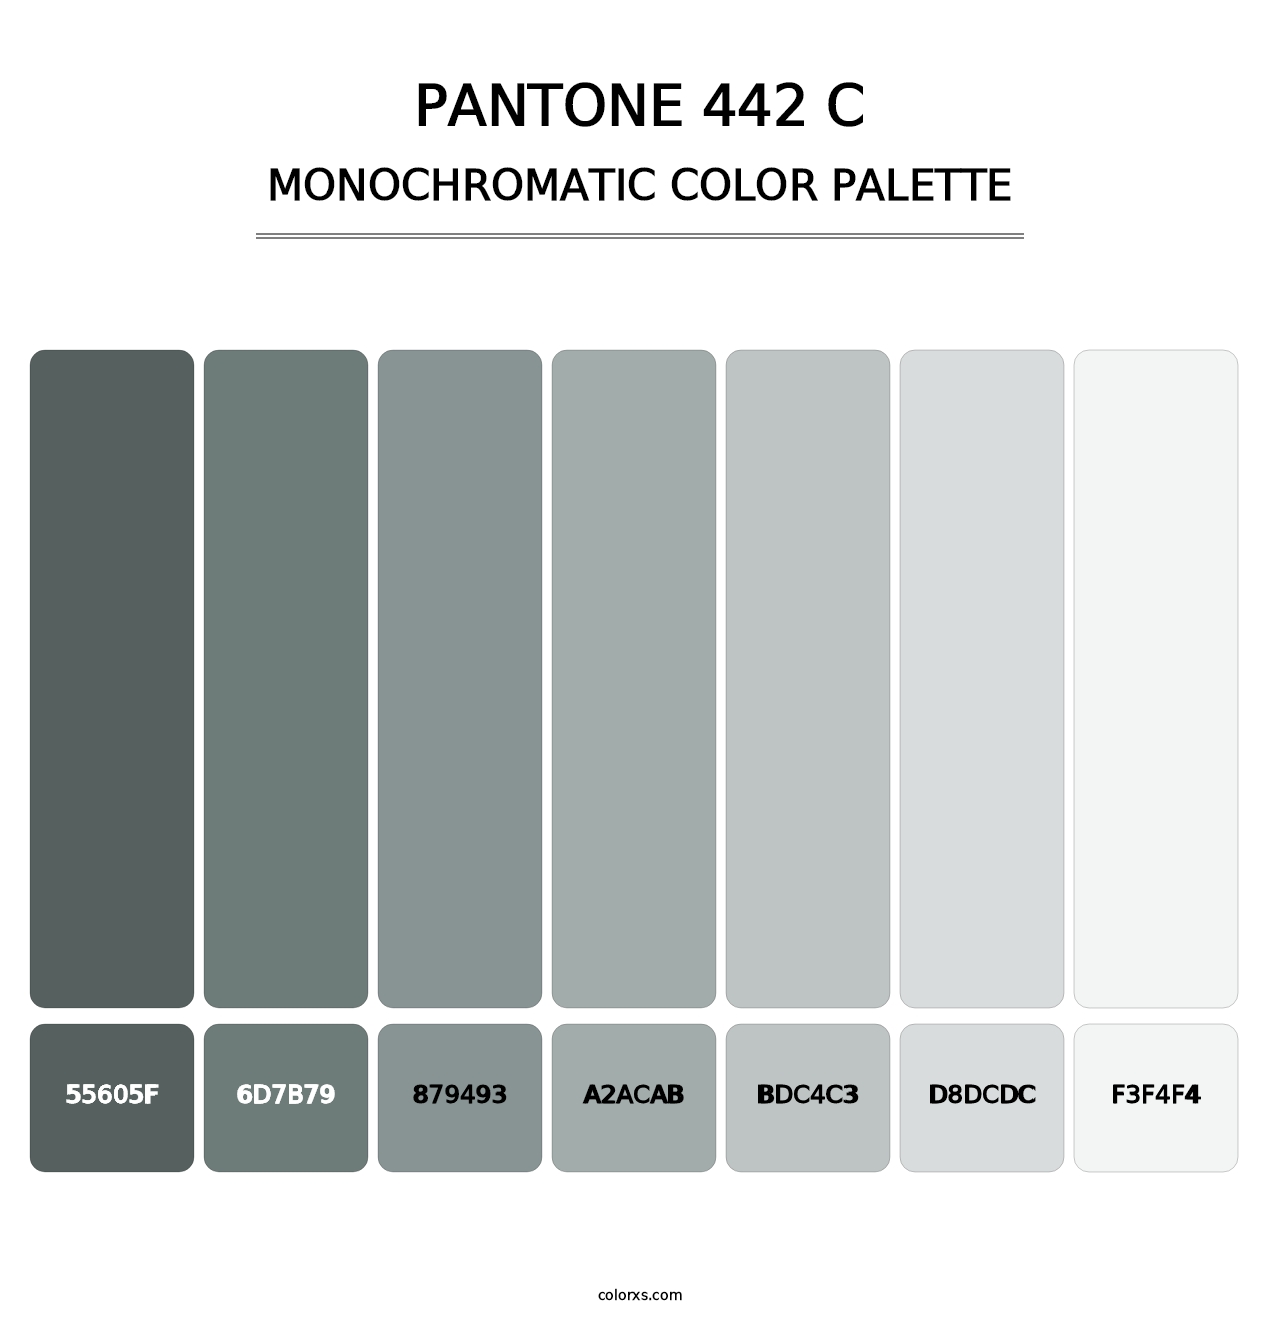 PANTONE 442 C - Monochromatic Color Palette